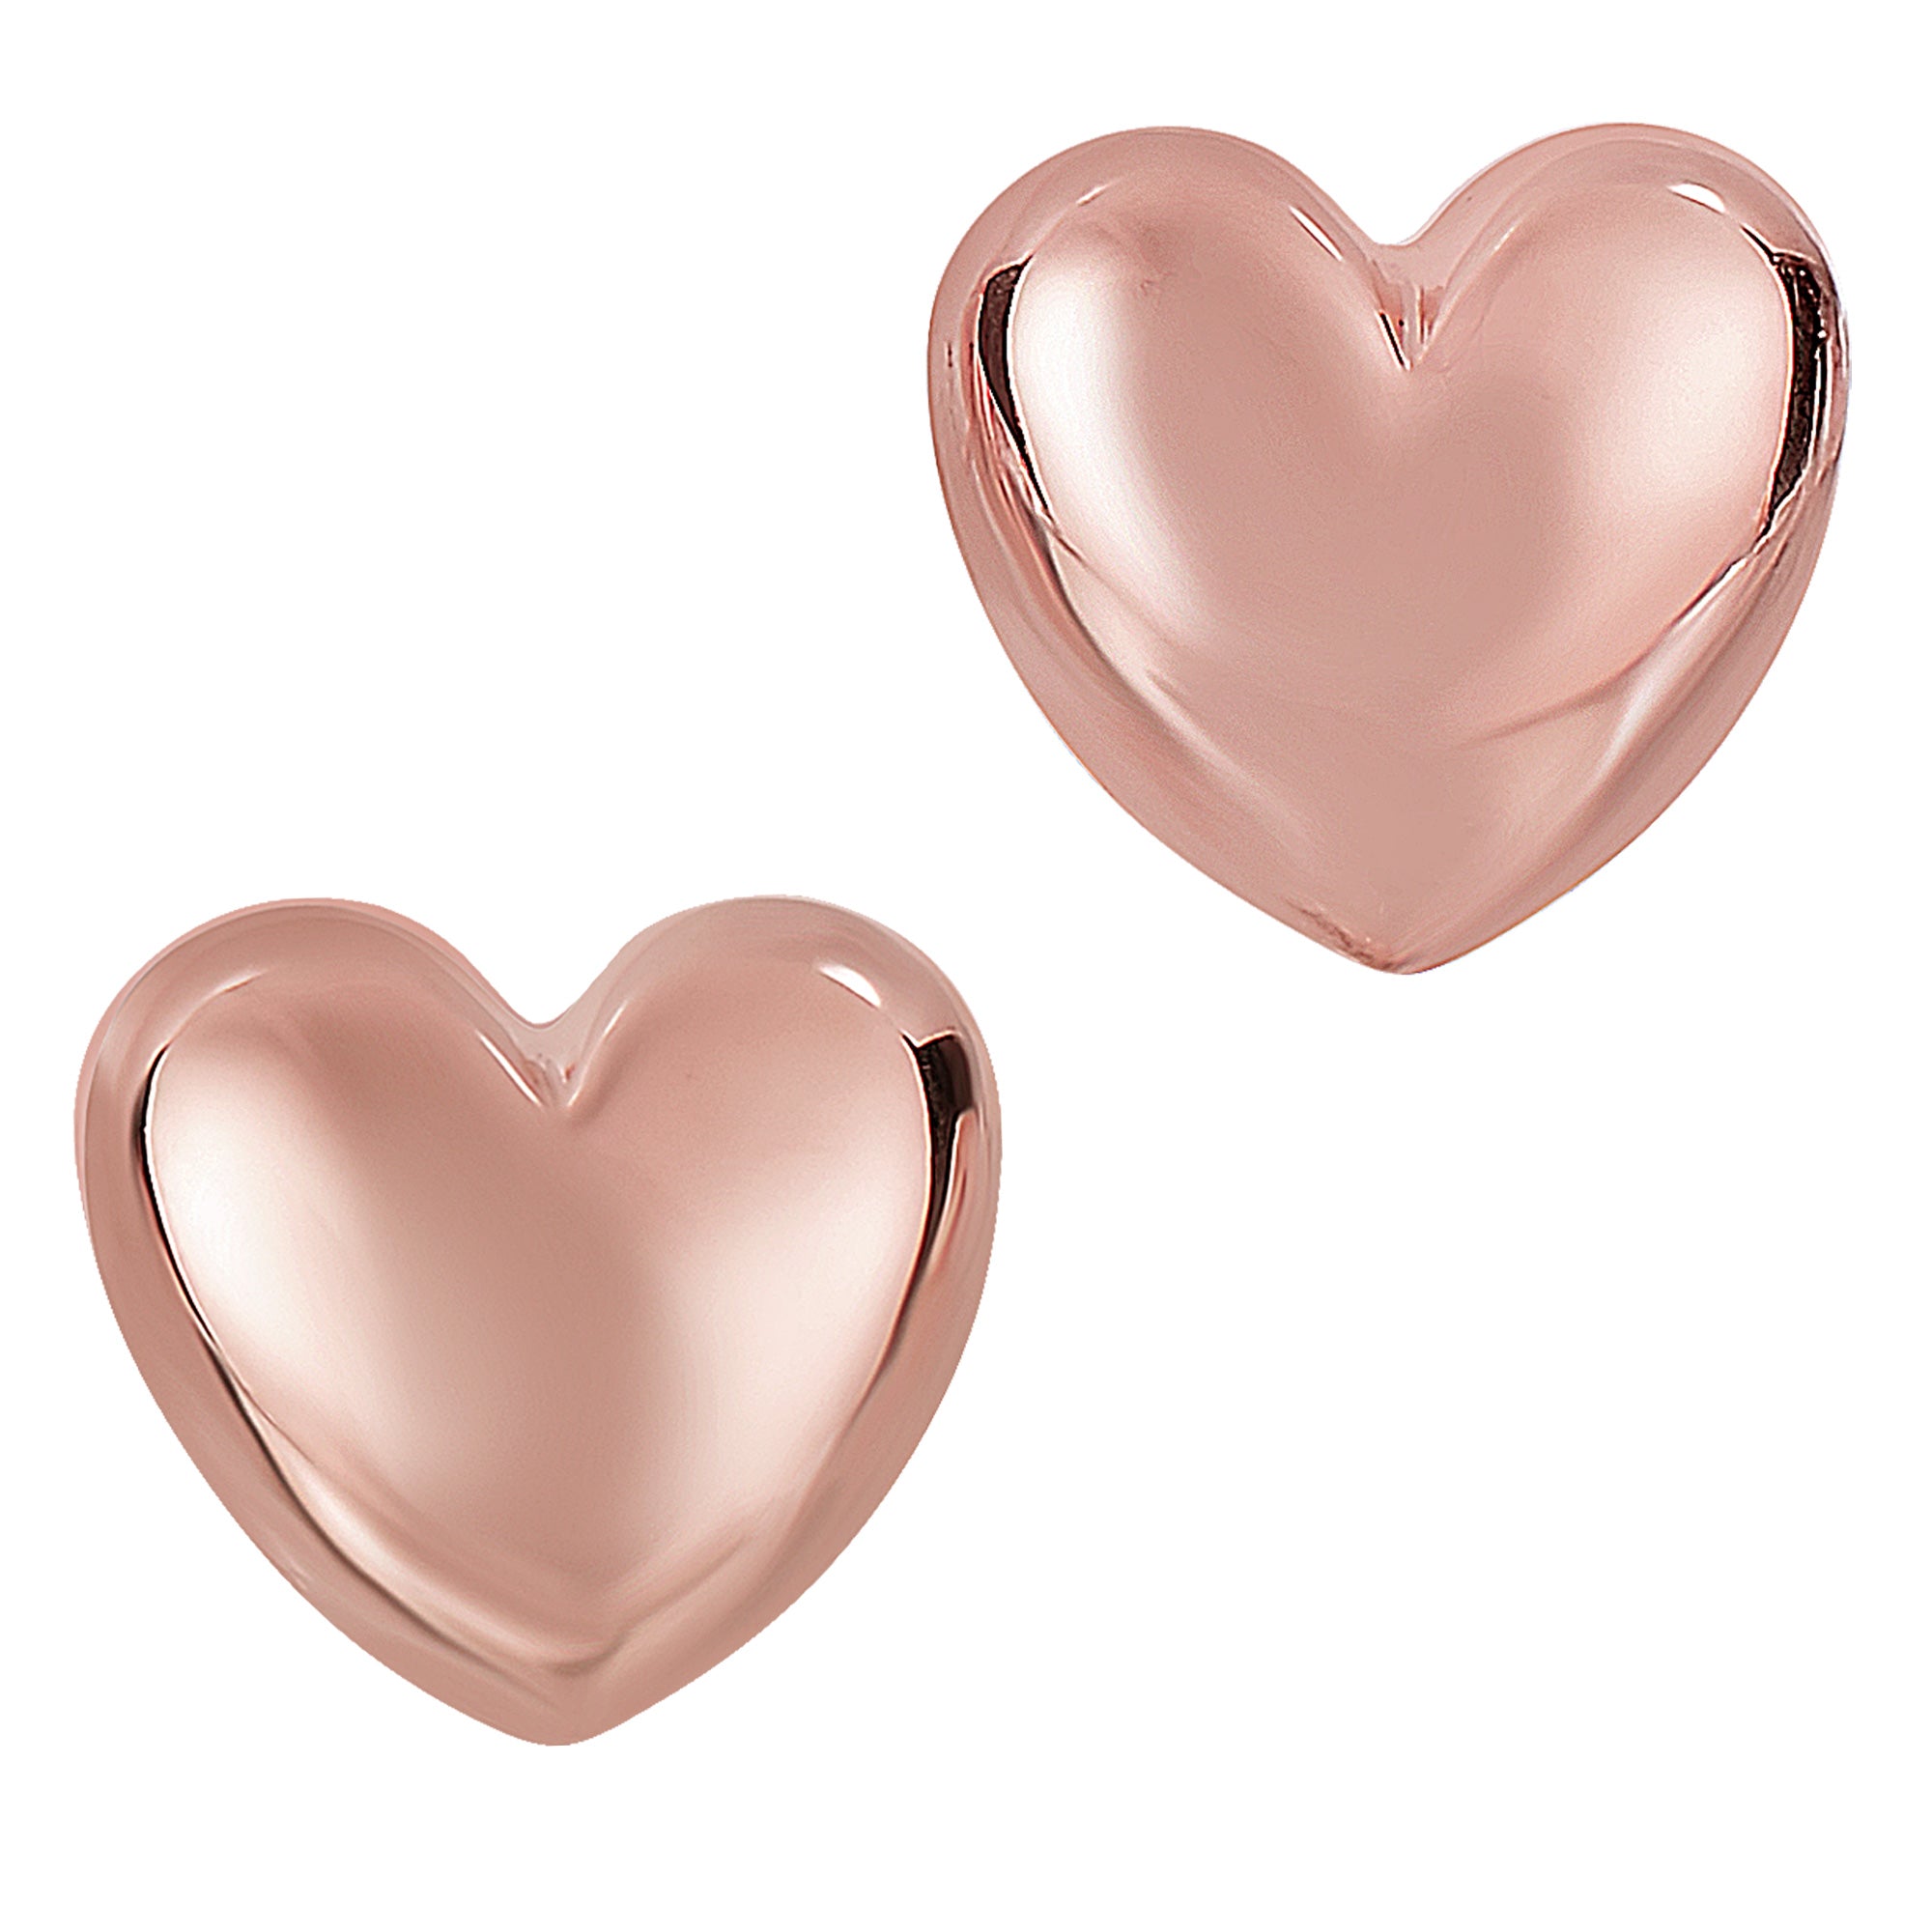 14k Gold Shiny Puff Heart Shape Stud Earrings, 10 x 11mm